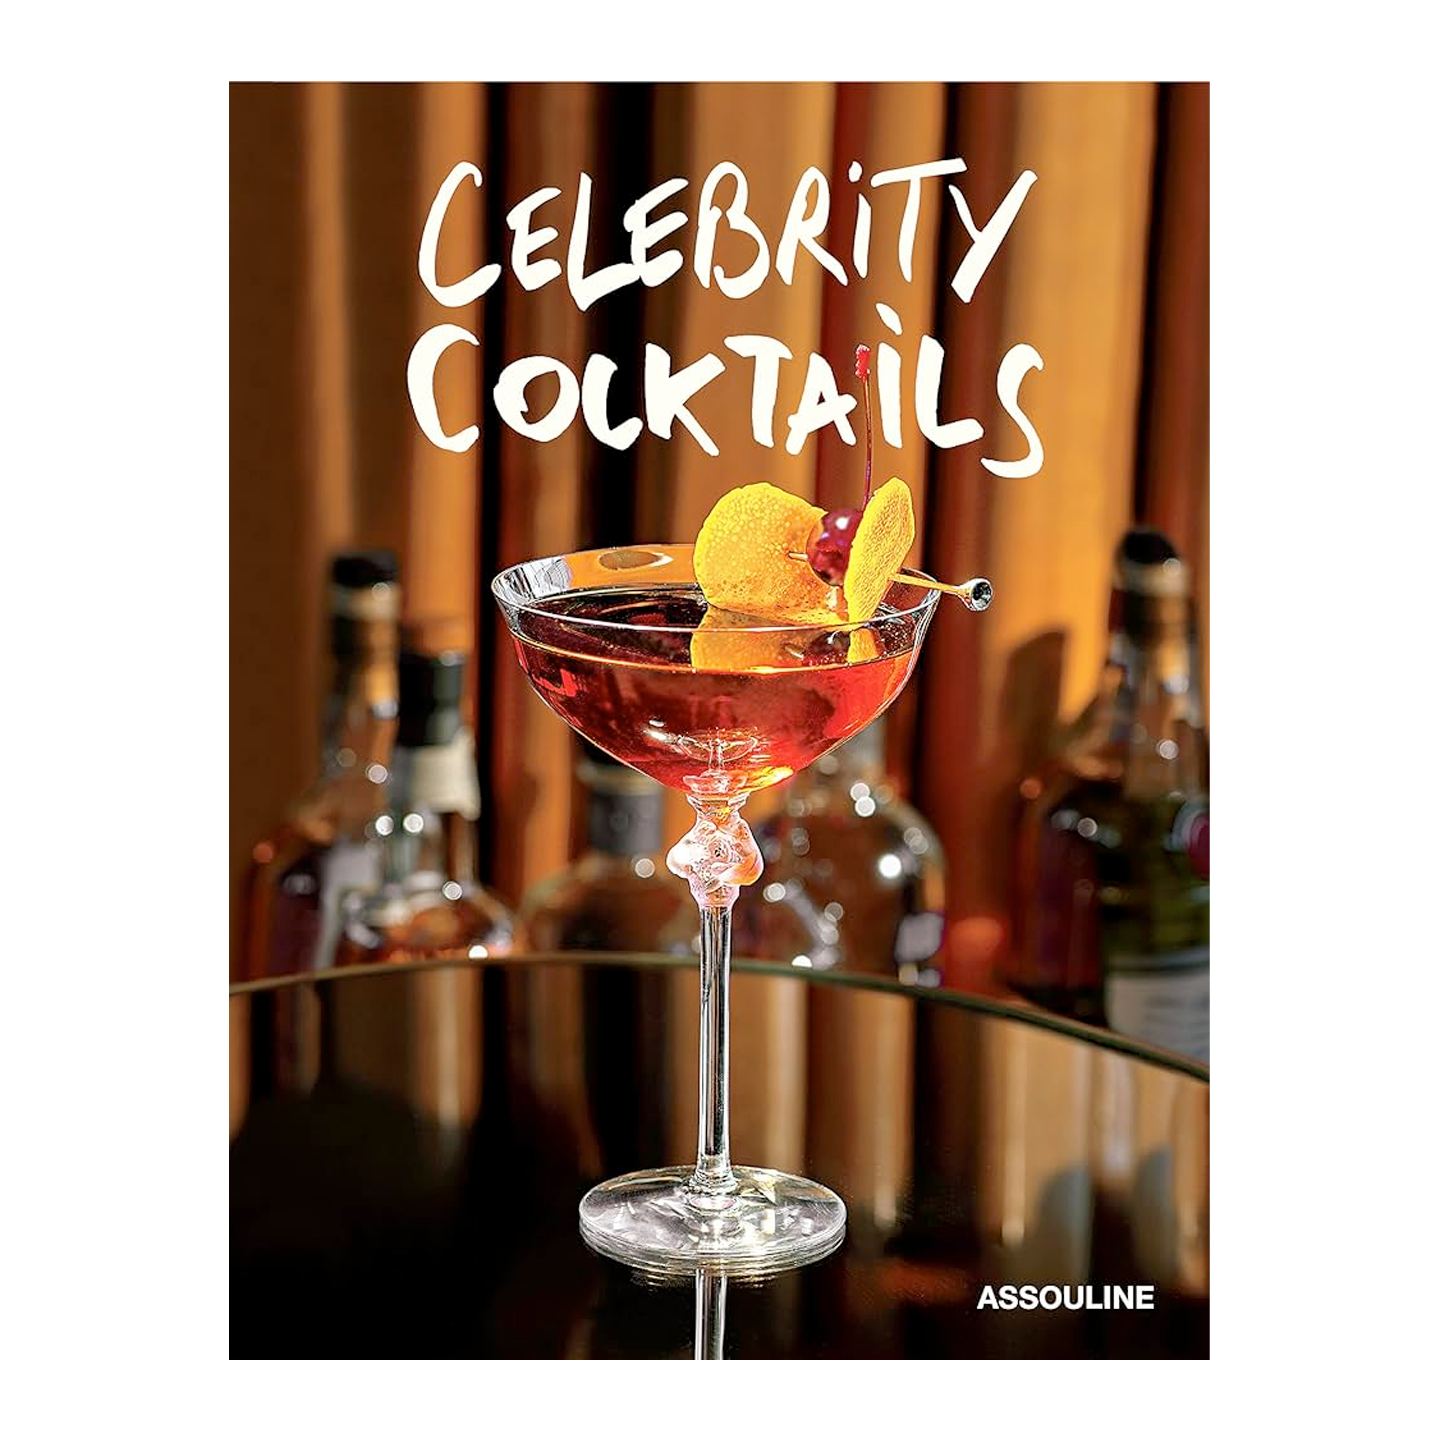 Celebrity Cocktails, ASSOULINE - RSVP Style